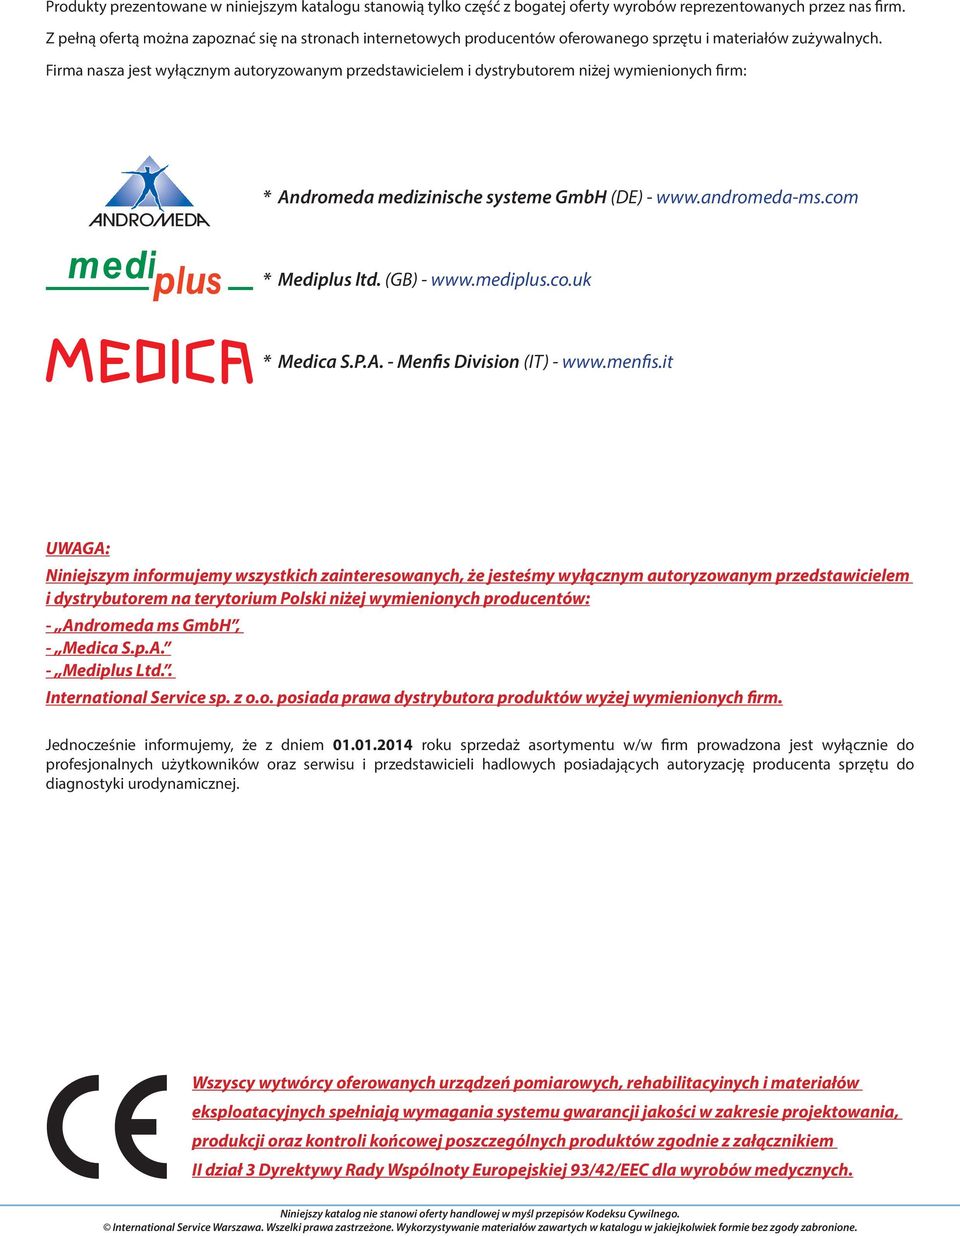 Firma nasza jest wyłącznym autoryzowanym przedstawicielem i dystrybutorem niżej wymienionych firm: * Andromeda medizinische systeme GmbH (DE) - www.andromeda-ms.com * Mediplus ltd. (GB) - www.